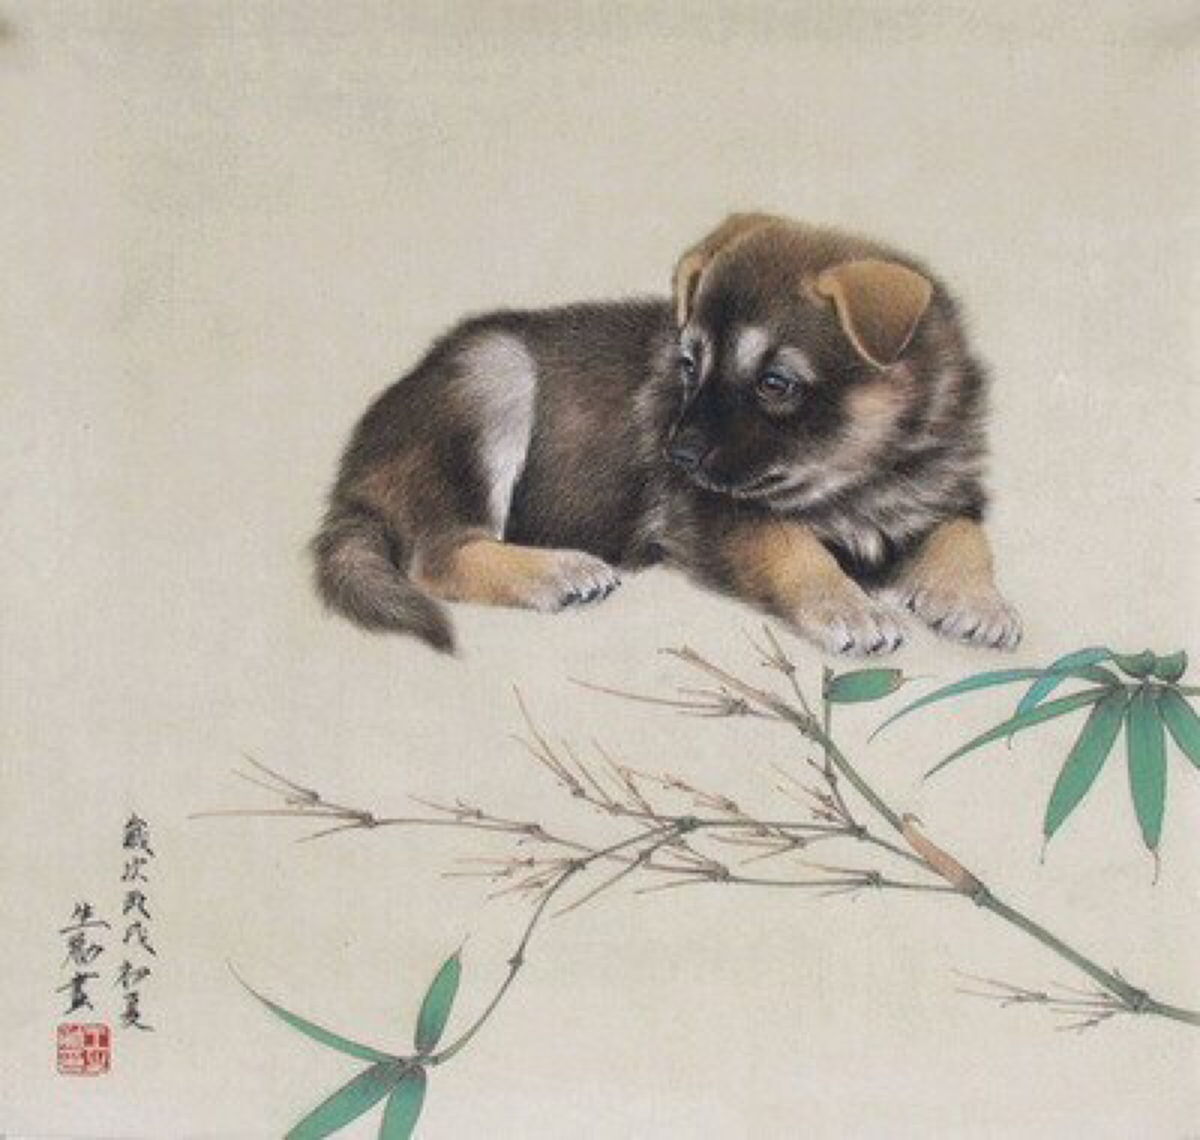 中华艺术节宫收藏的12幅工笔生肖国画 狗